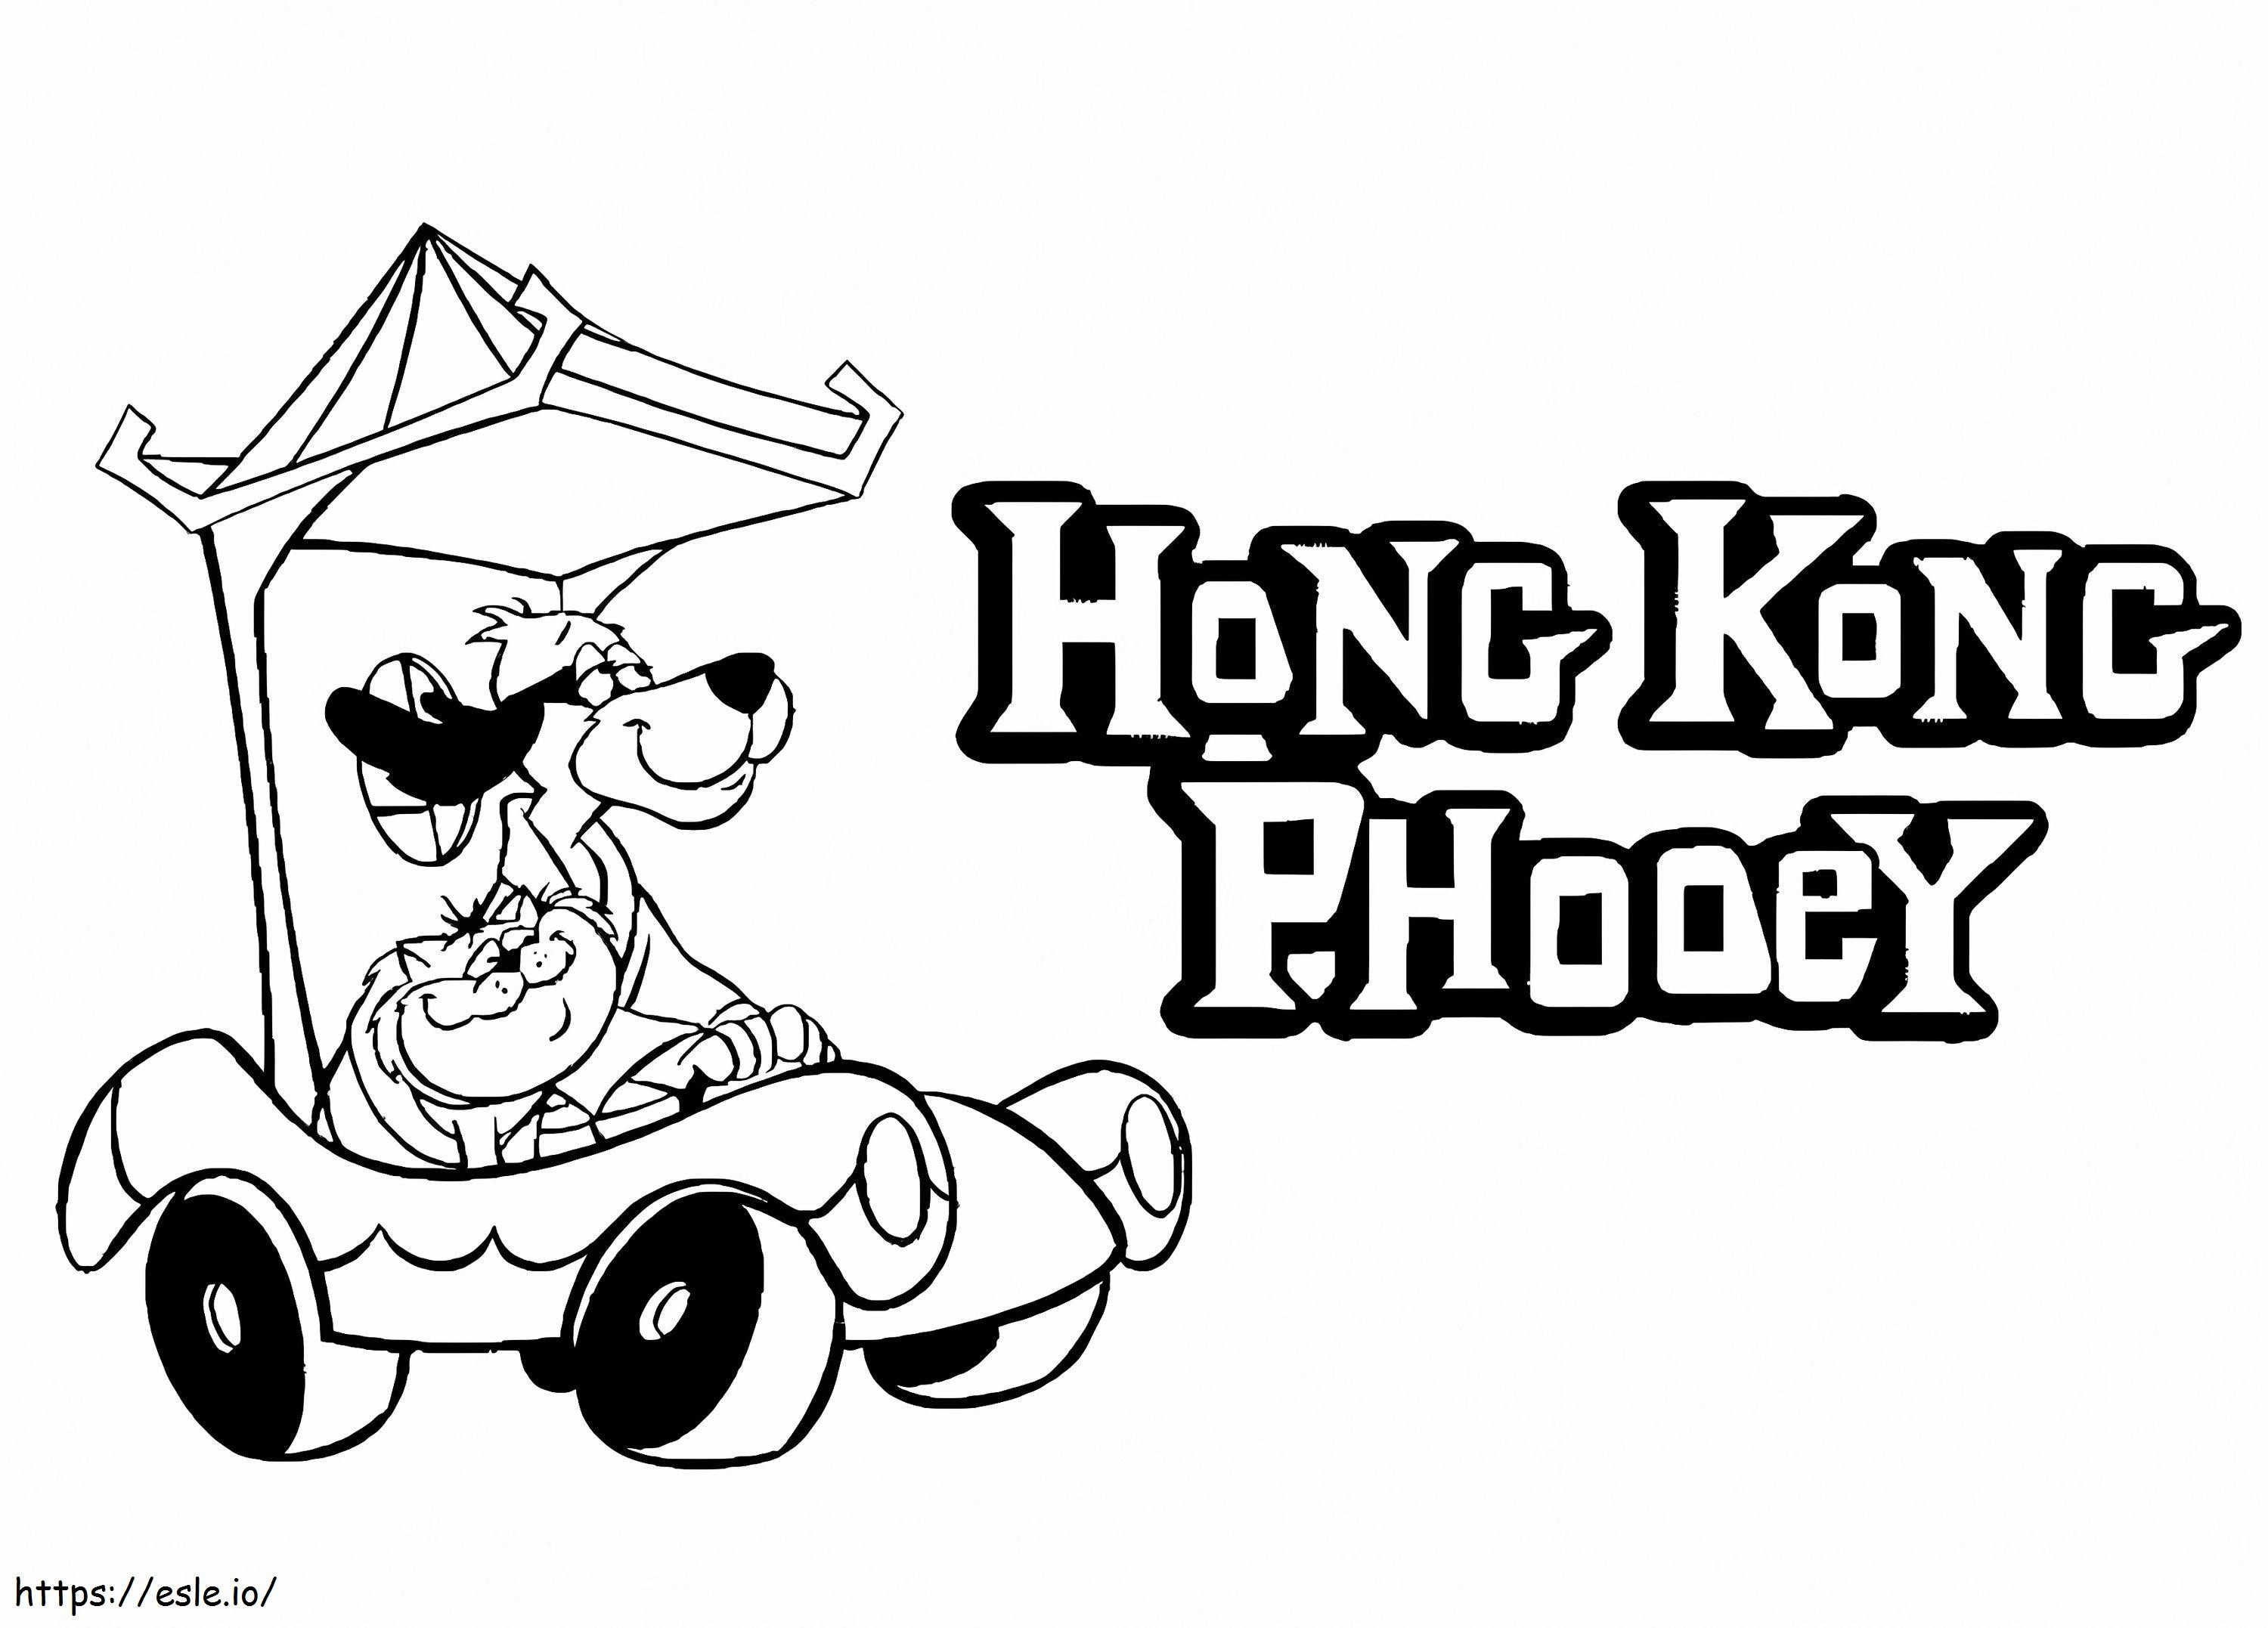 Spot mit Hong Kong Phooey ausmalbilder